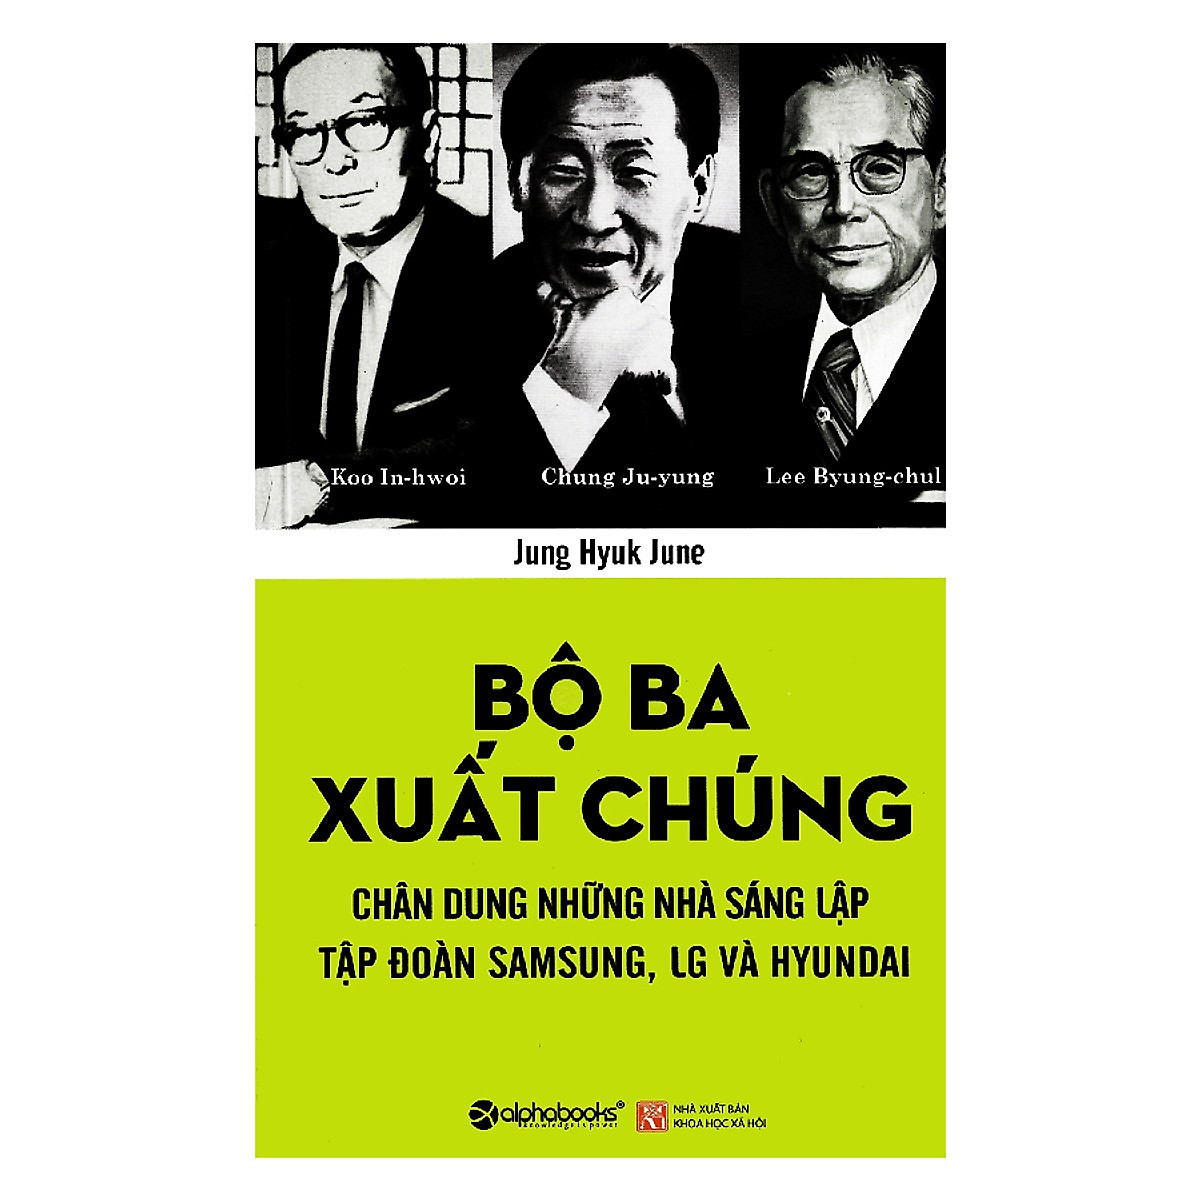 Tủ Sách Doanh Nhân Kiệt Xuất: Bộ Ba Xuất Chúng Hàn Quốc (Chung Ju-yung, Lee Byung-chul, Koo In-hwoi là ba nhà sáng lập của ba tập đoàn hàng đầu ở Hàn Quốc); Tặng Kèm BookMark